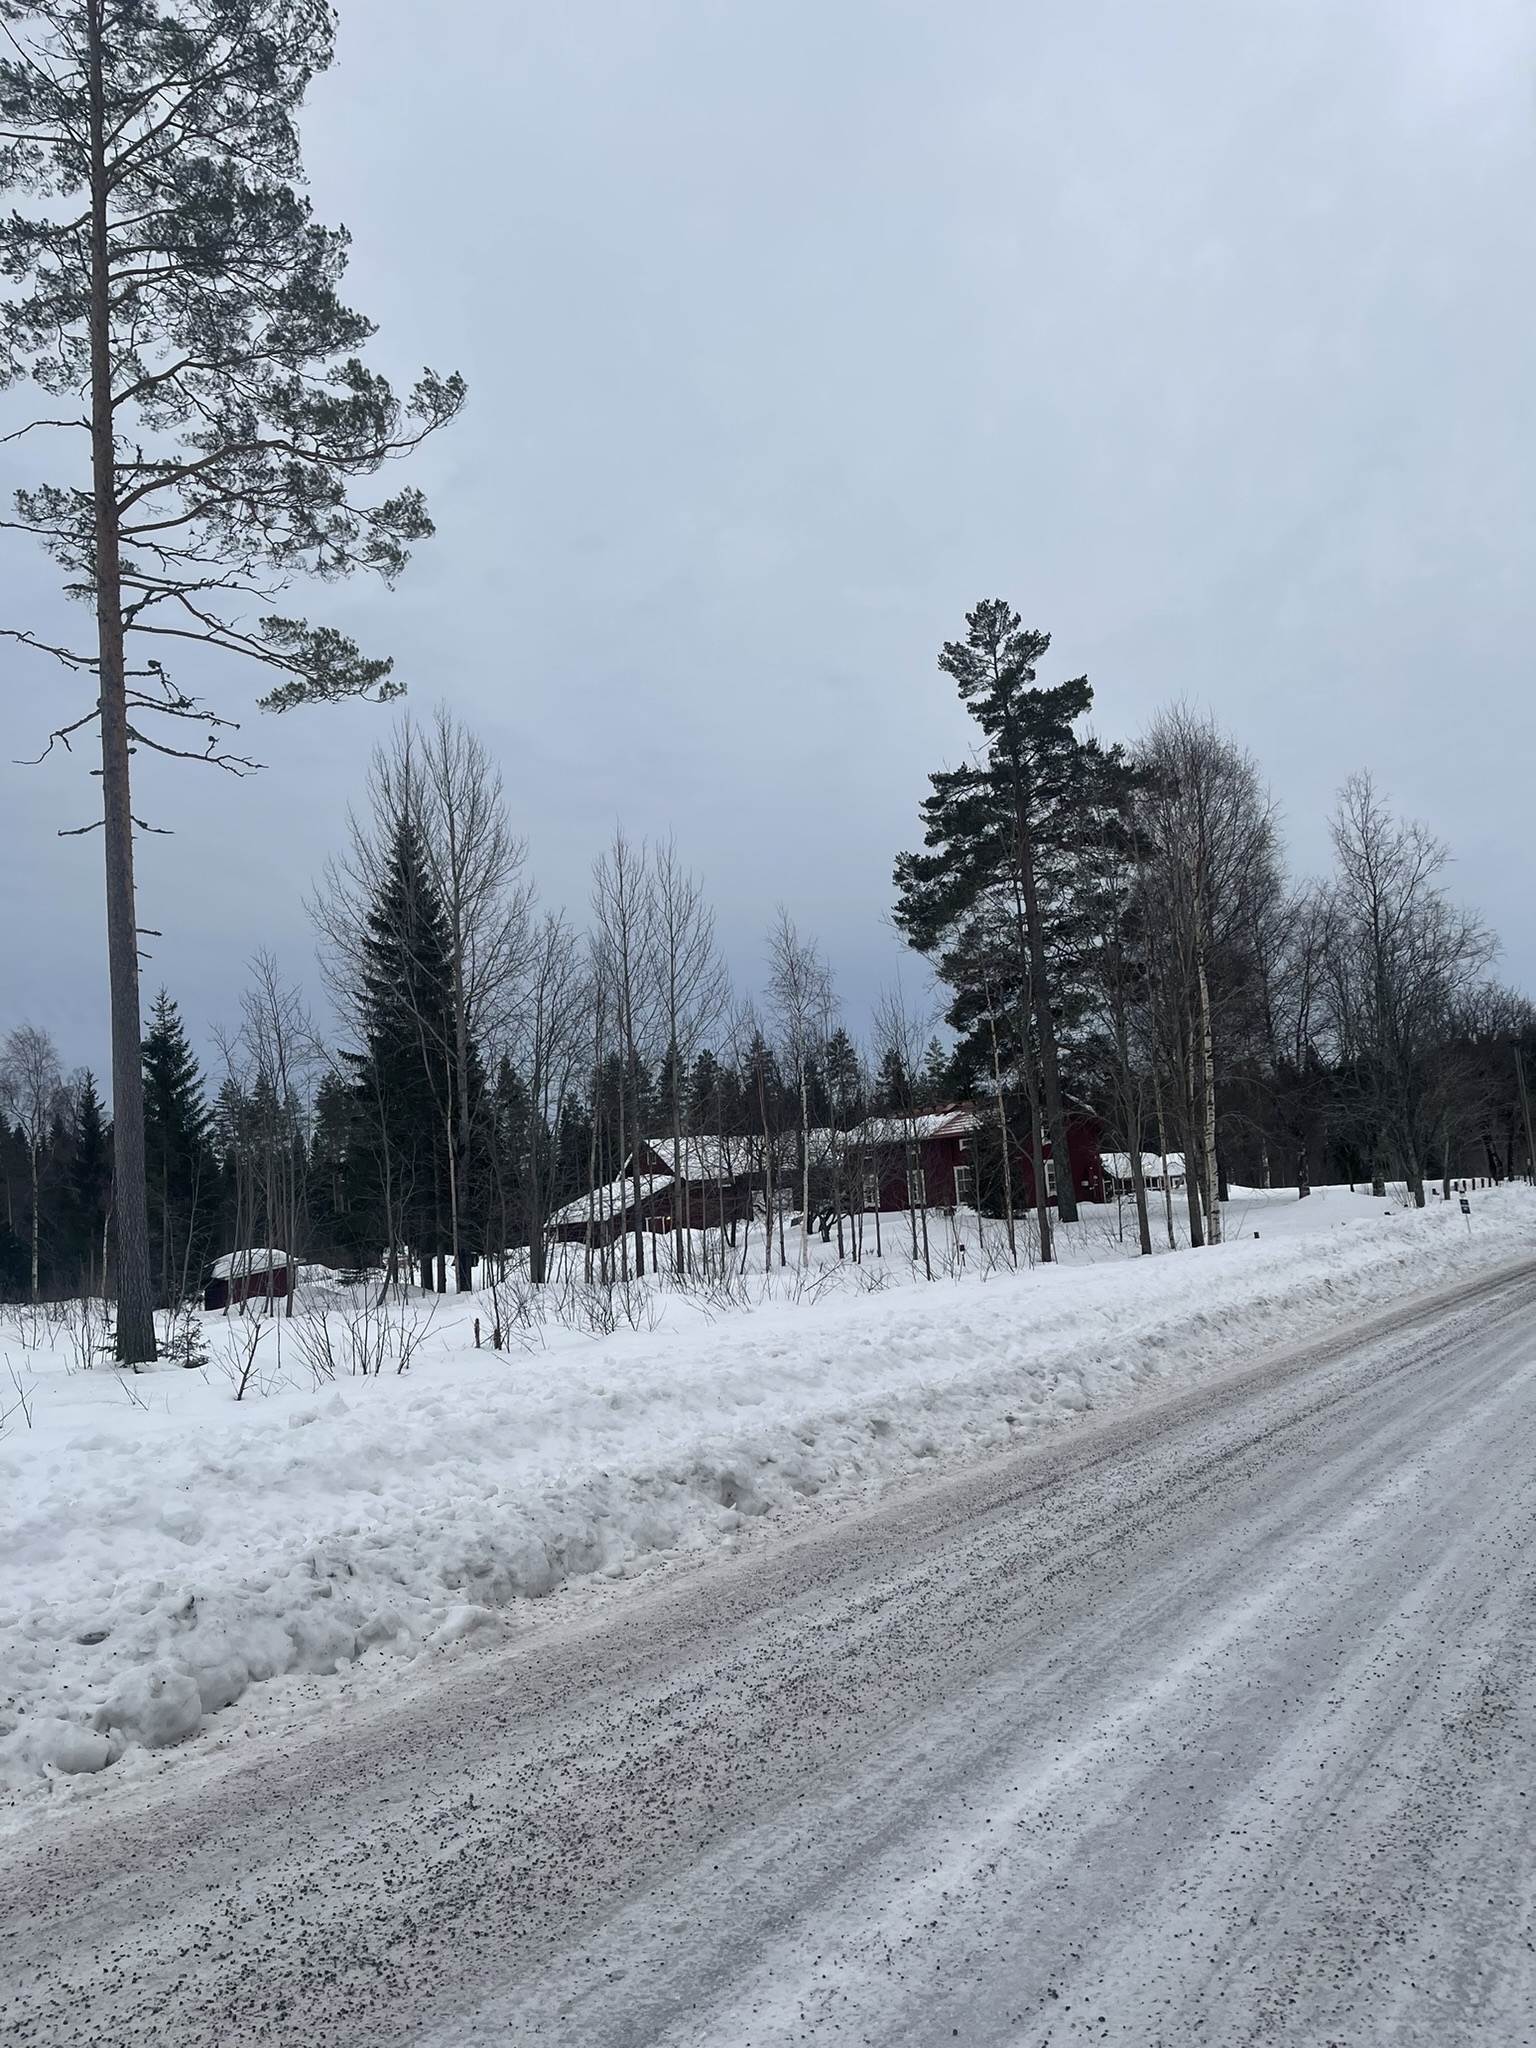 (スウェーデン北部はとても牧歌的だった。道路を離れ、深い森の中をハイキングするまでは。)